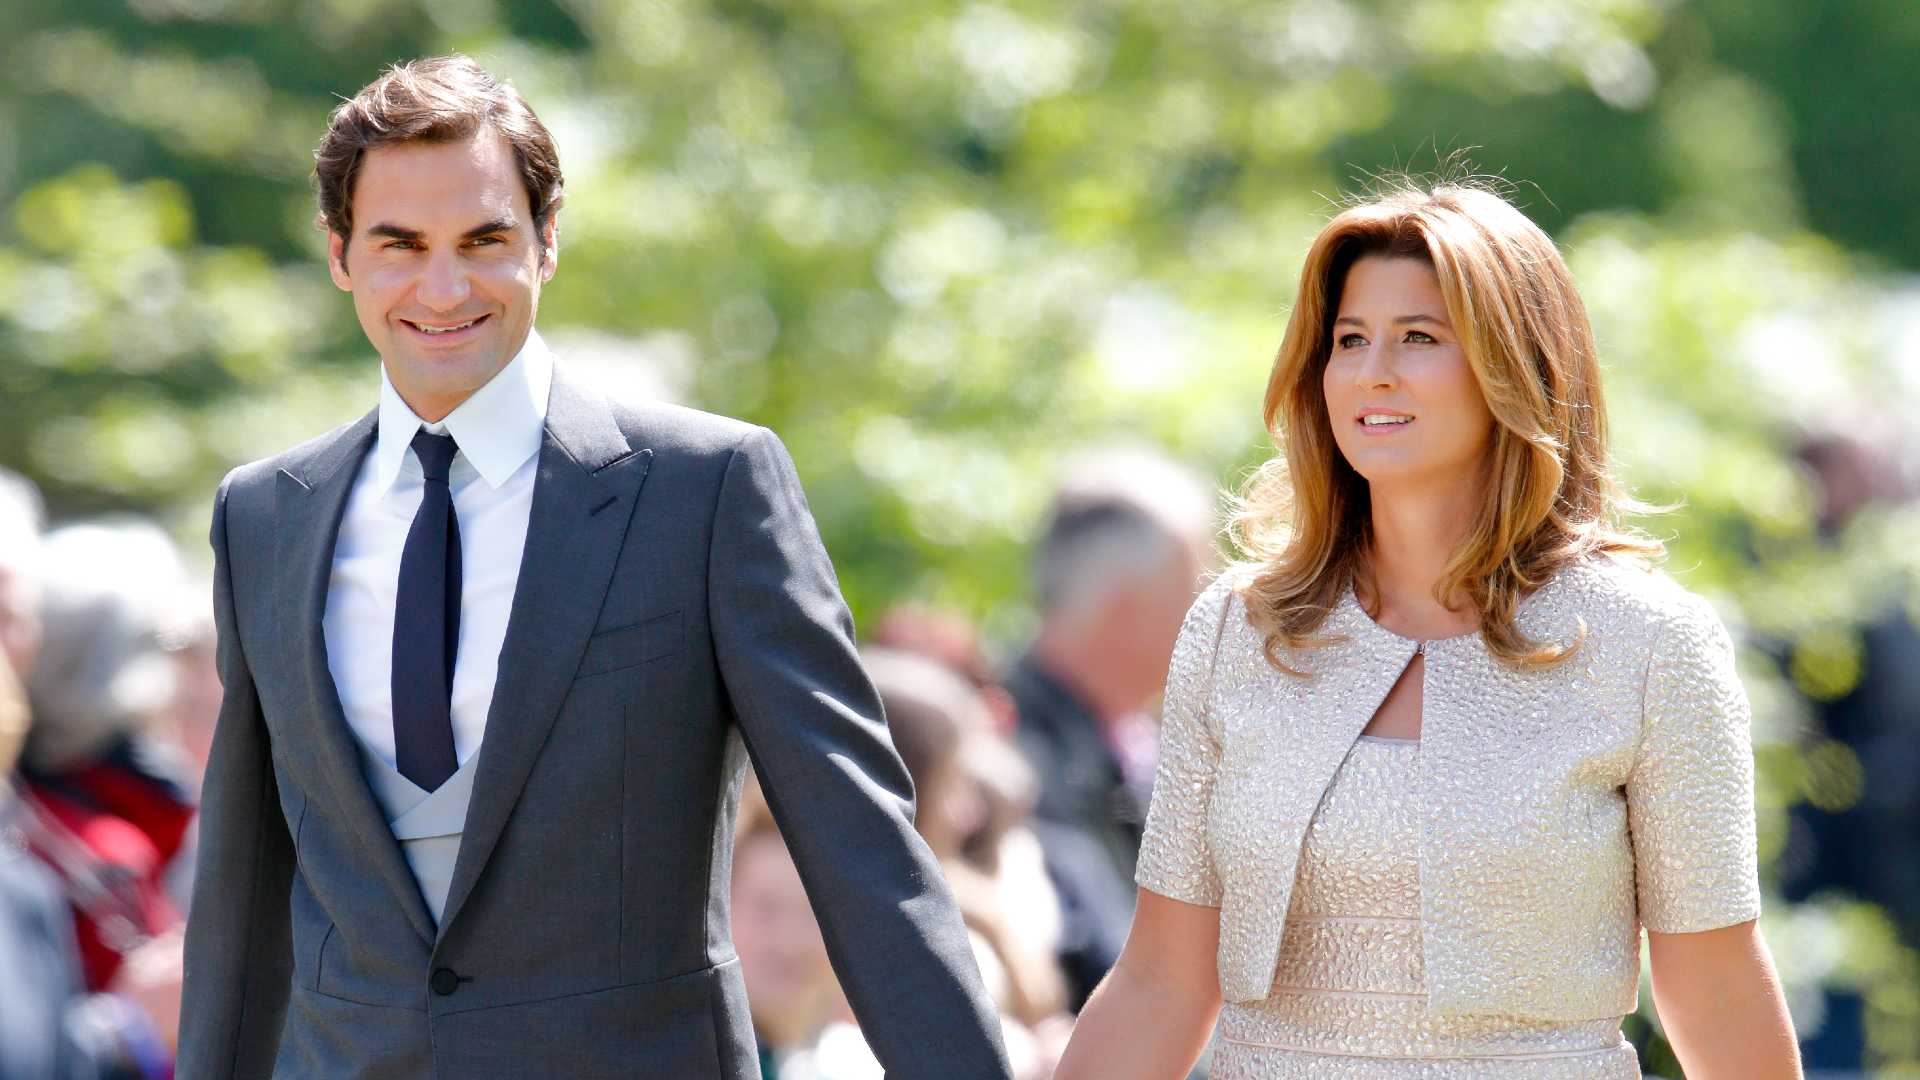 Roger Federer & Wife, Mirka Federer